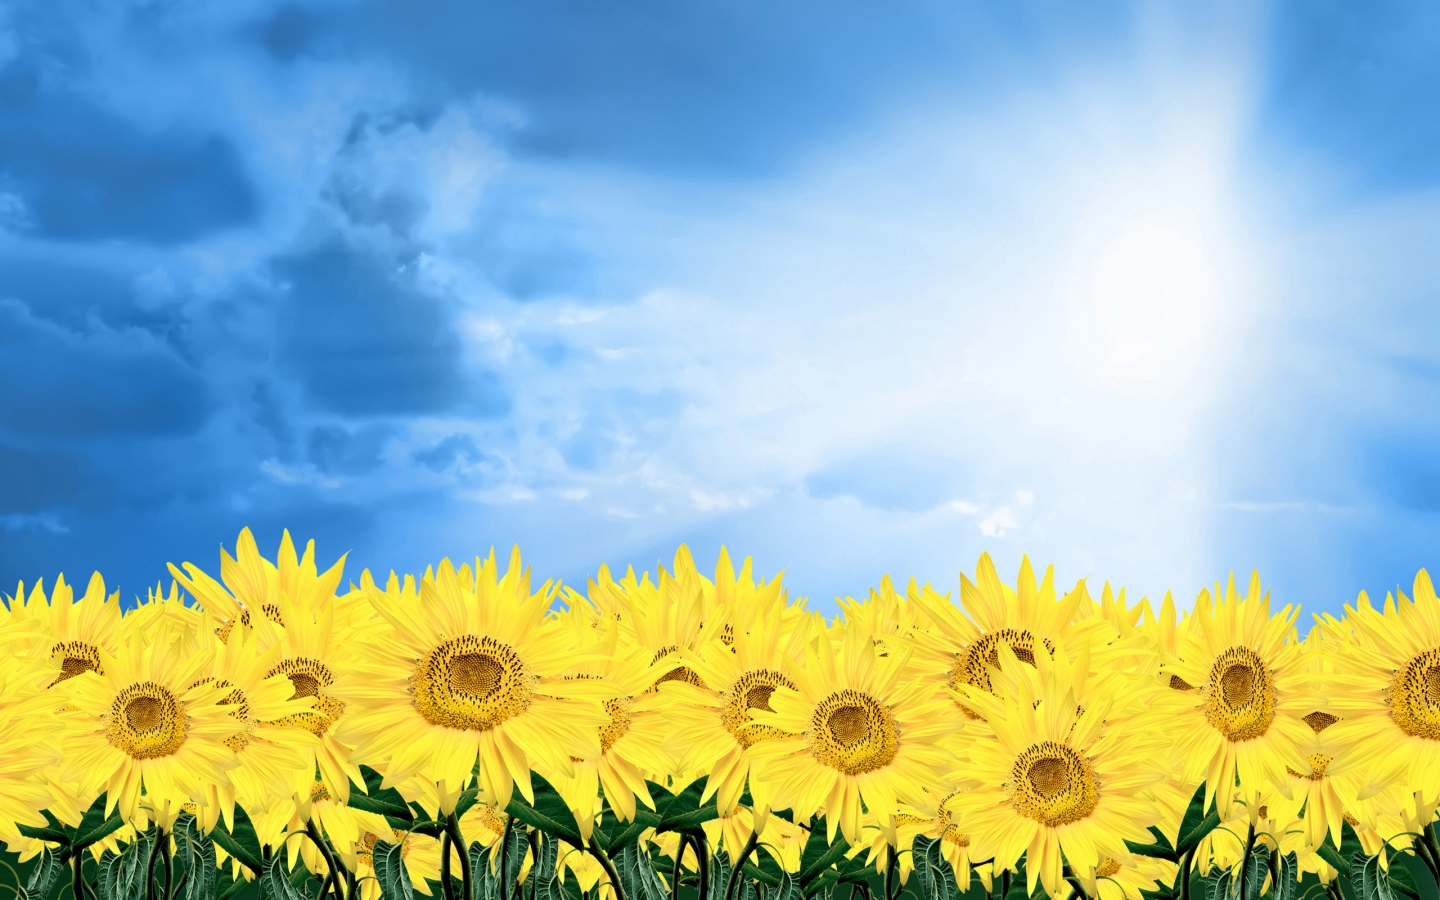 Summer Sunflowers for 1440 x 900 widescreen resolution